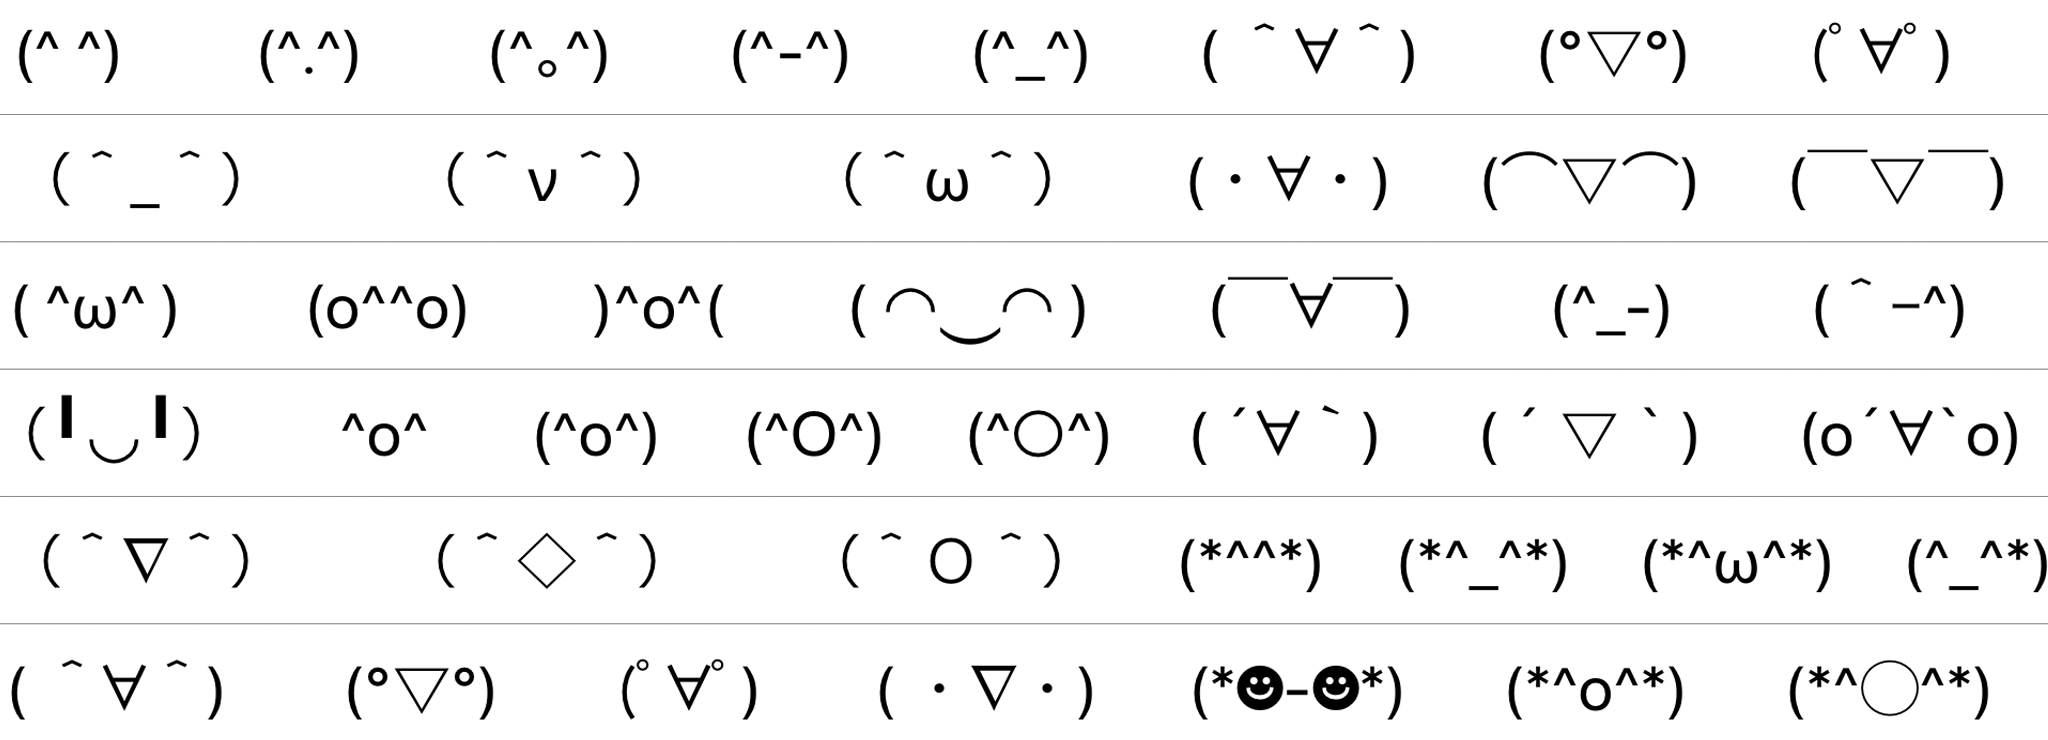 emoji_emoticon1 .png